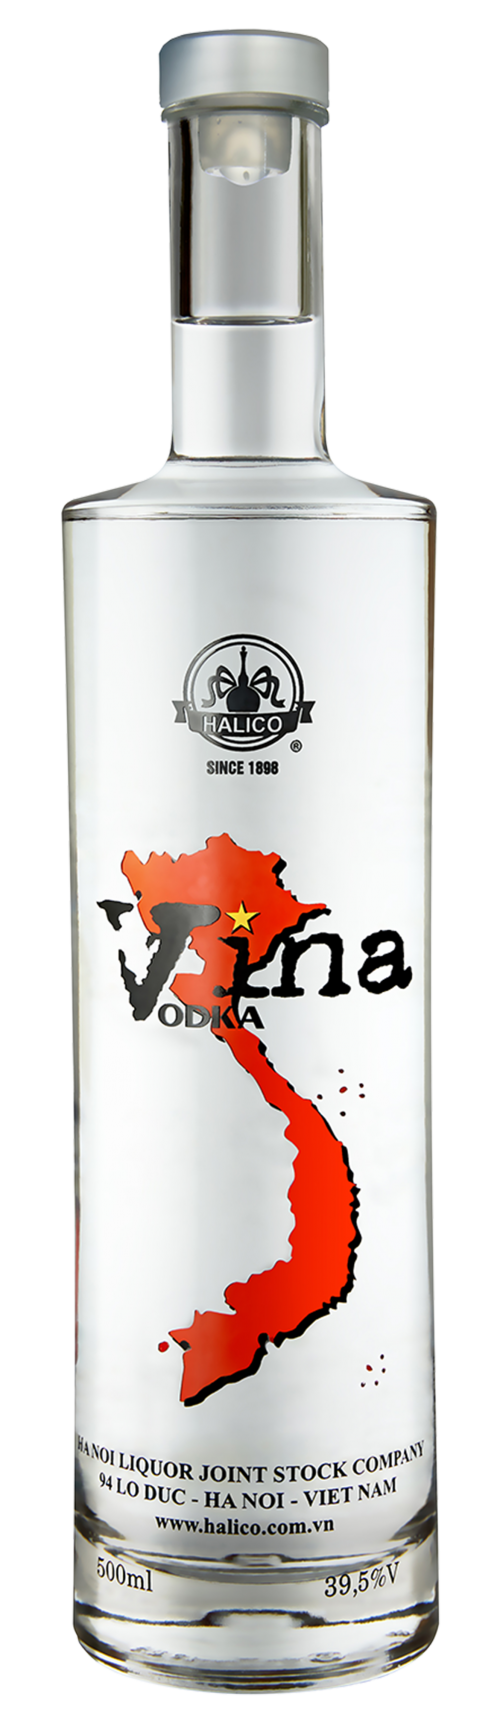 Vina Vodka e1574507141299